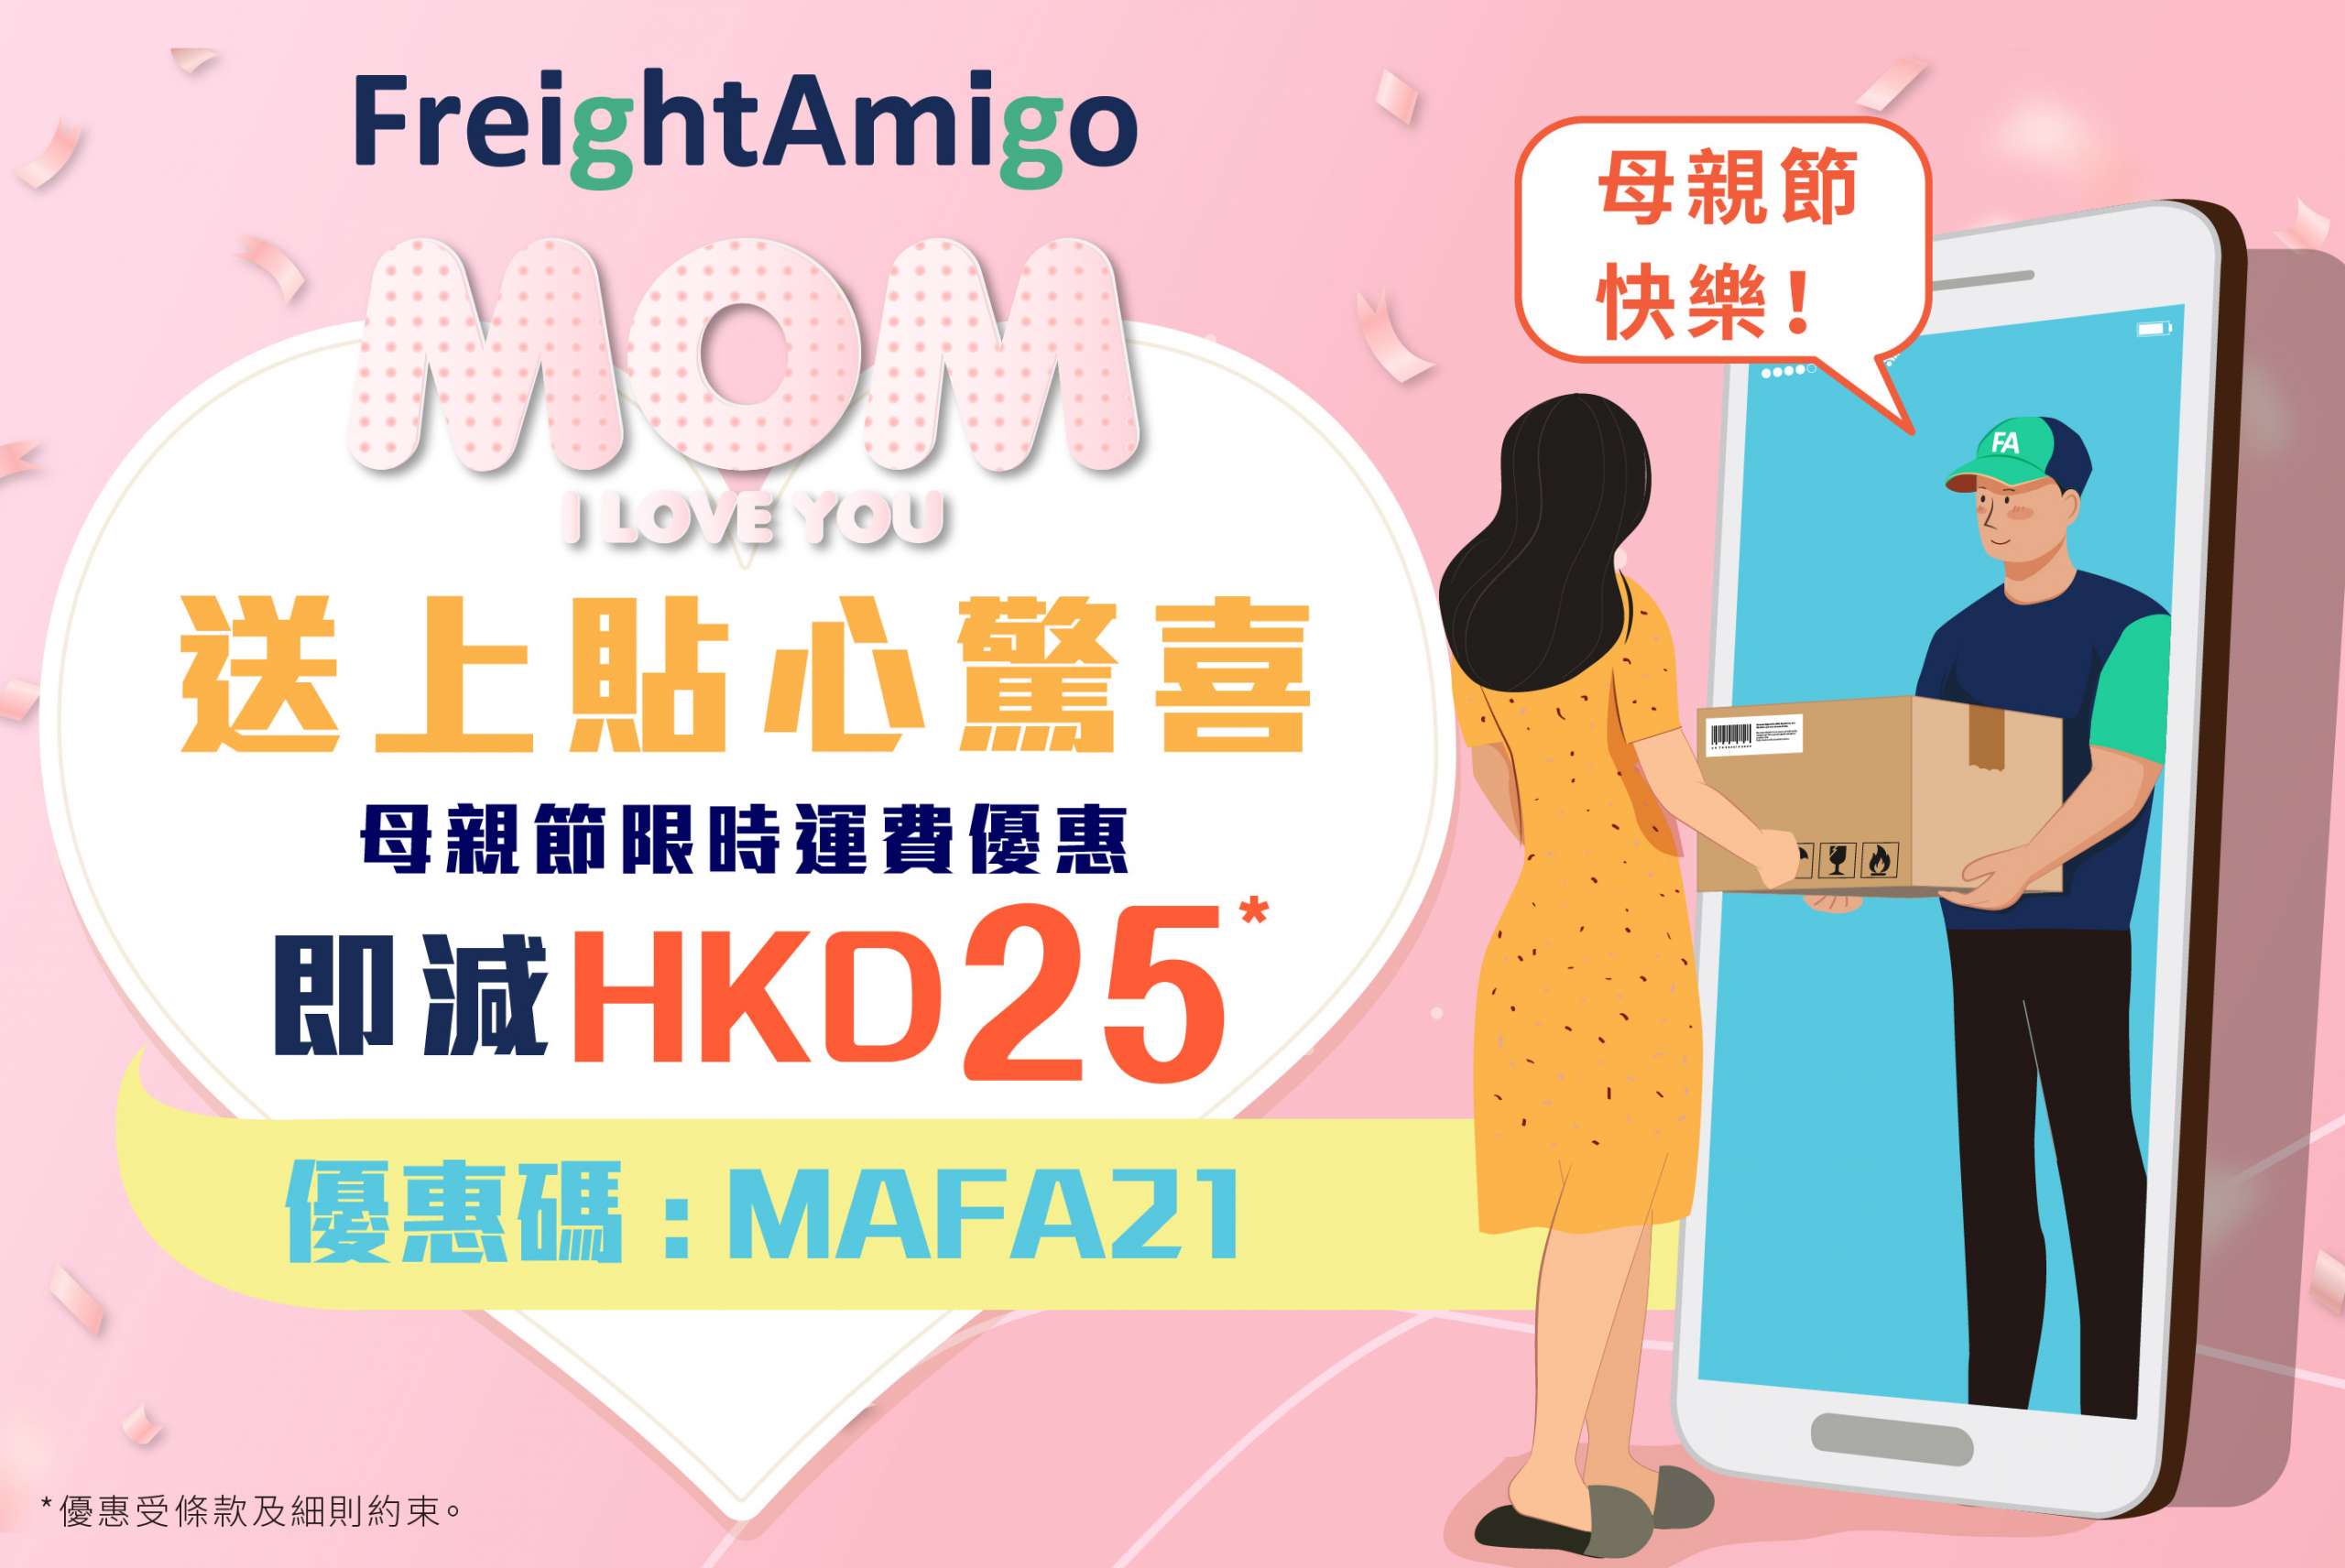 送上貼心驚喜 – 母親節限時HKD25運費優惠